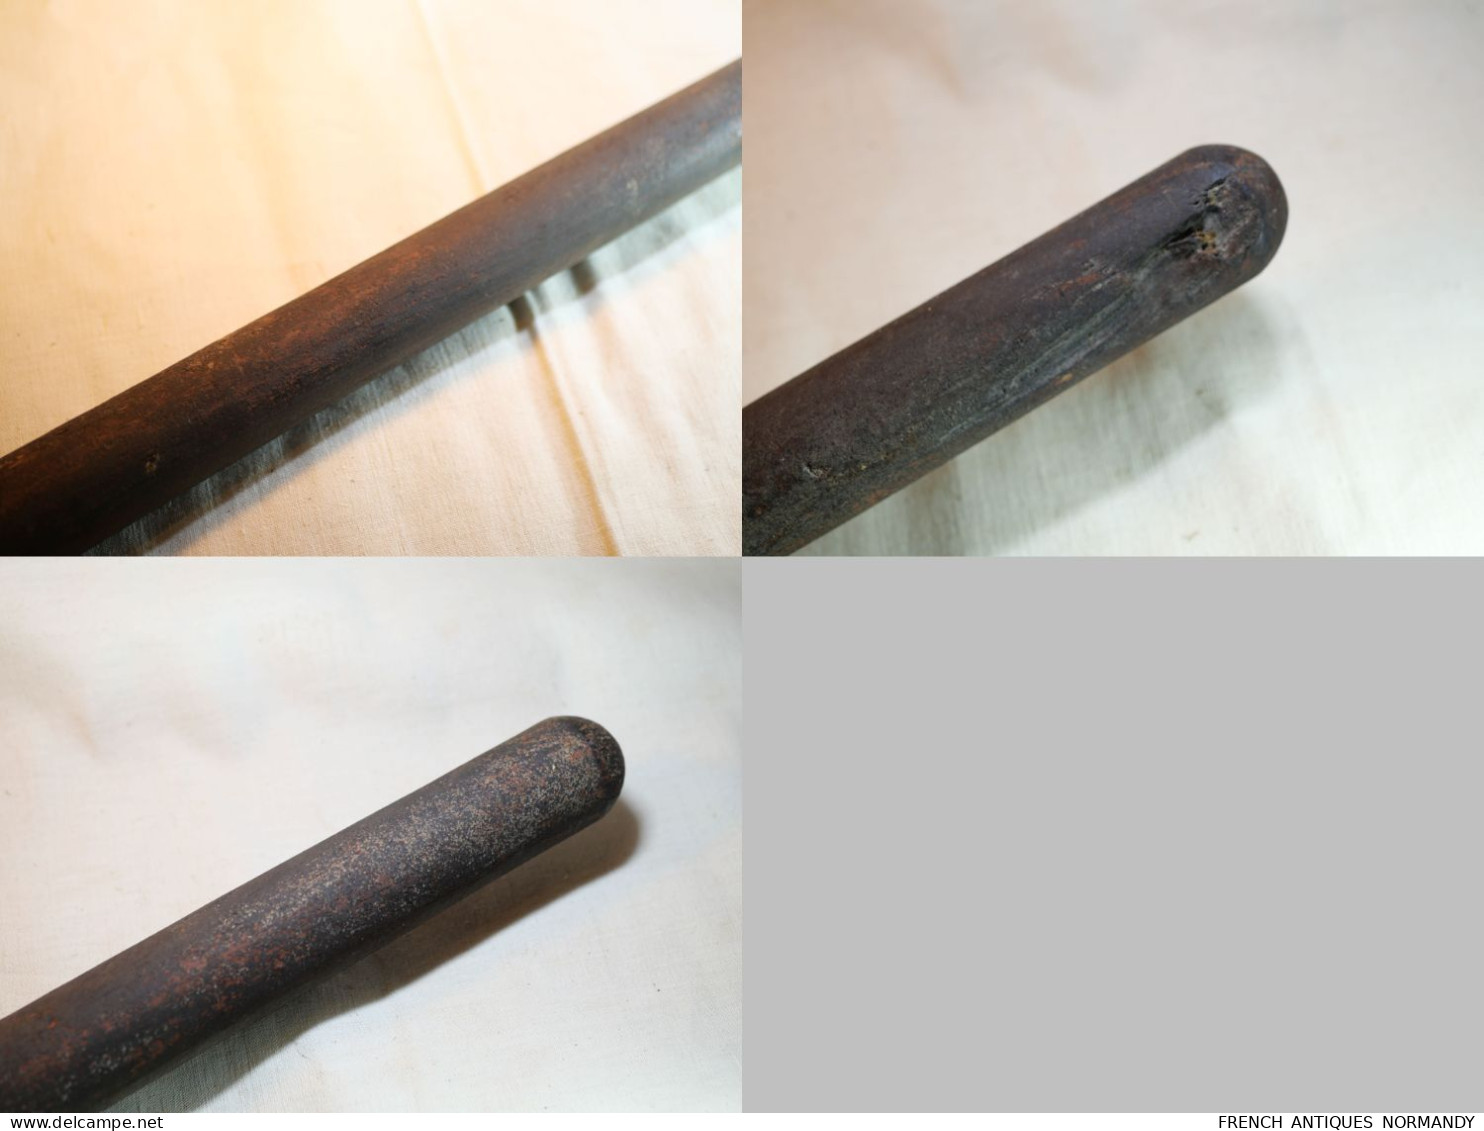 SAPEURS POMPIERS - Grande hache de pompier - époque XIX ième   Longueur totale 84 cm environ Longueur du fer 31 cm